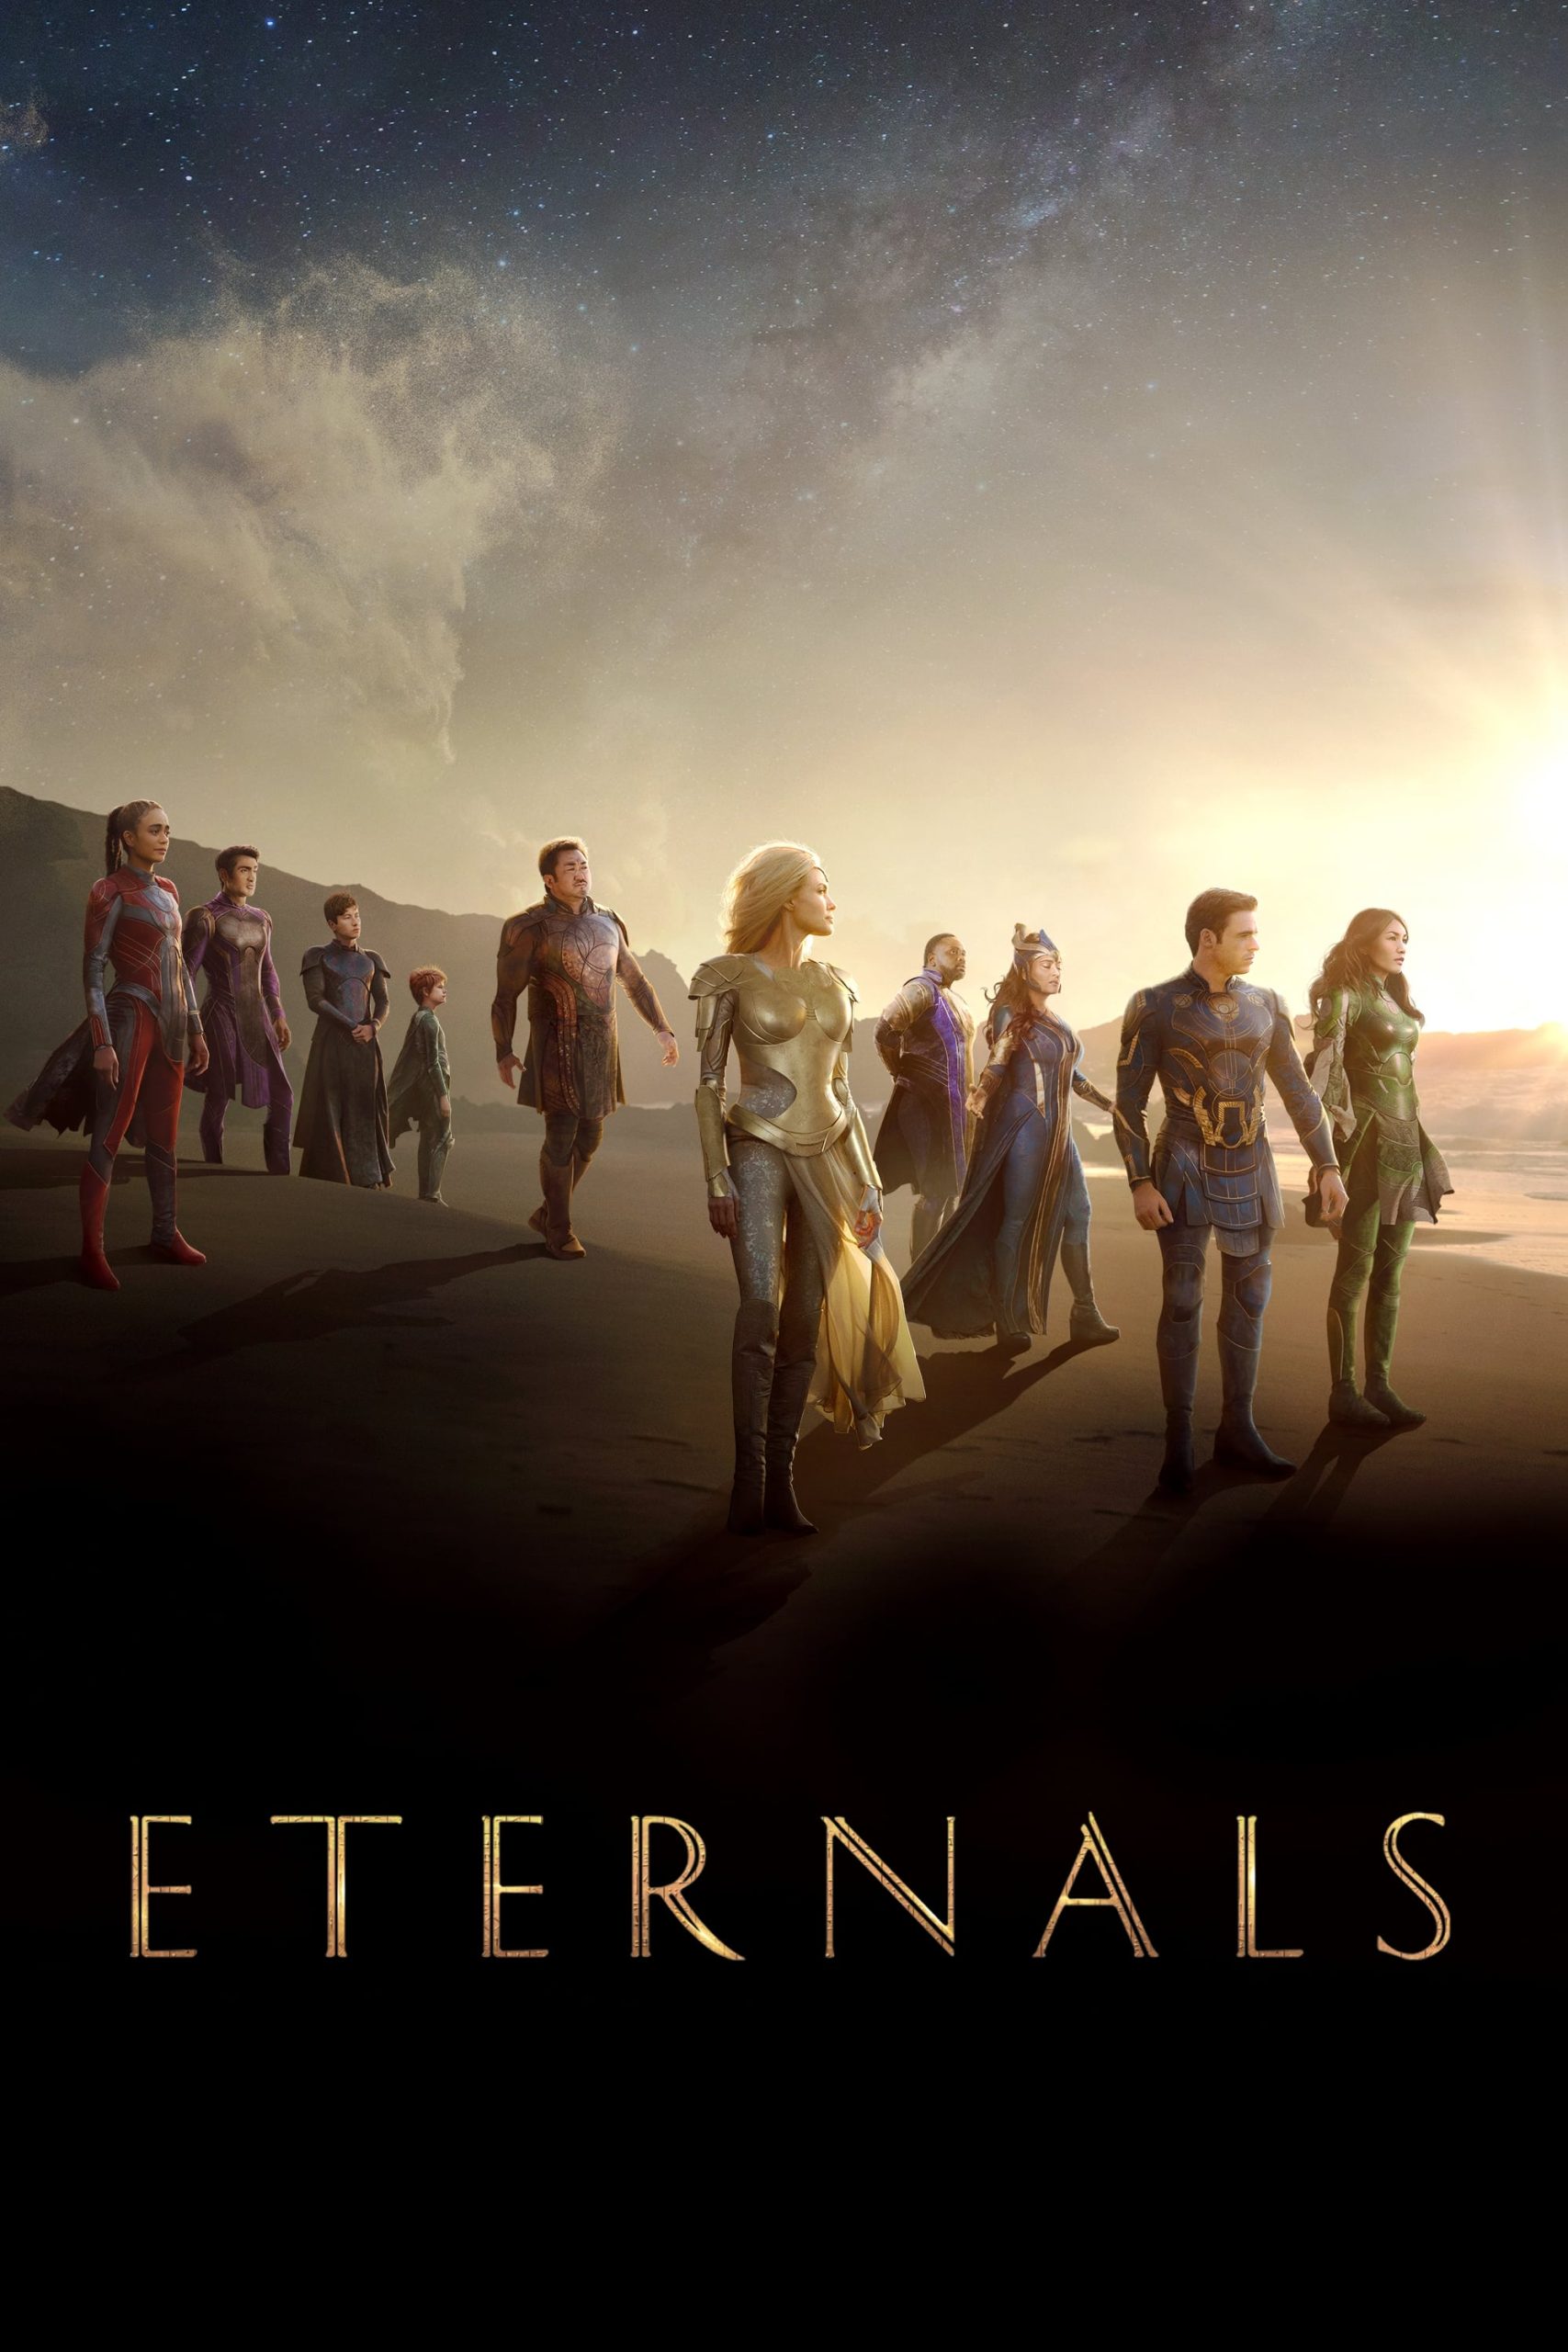 ดูหนังออนไลน์ Eternals อีเทอร์นอลส์ ฮีโร่พลังเทพเจ้า